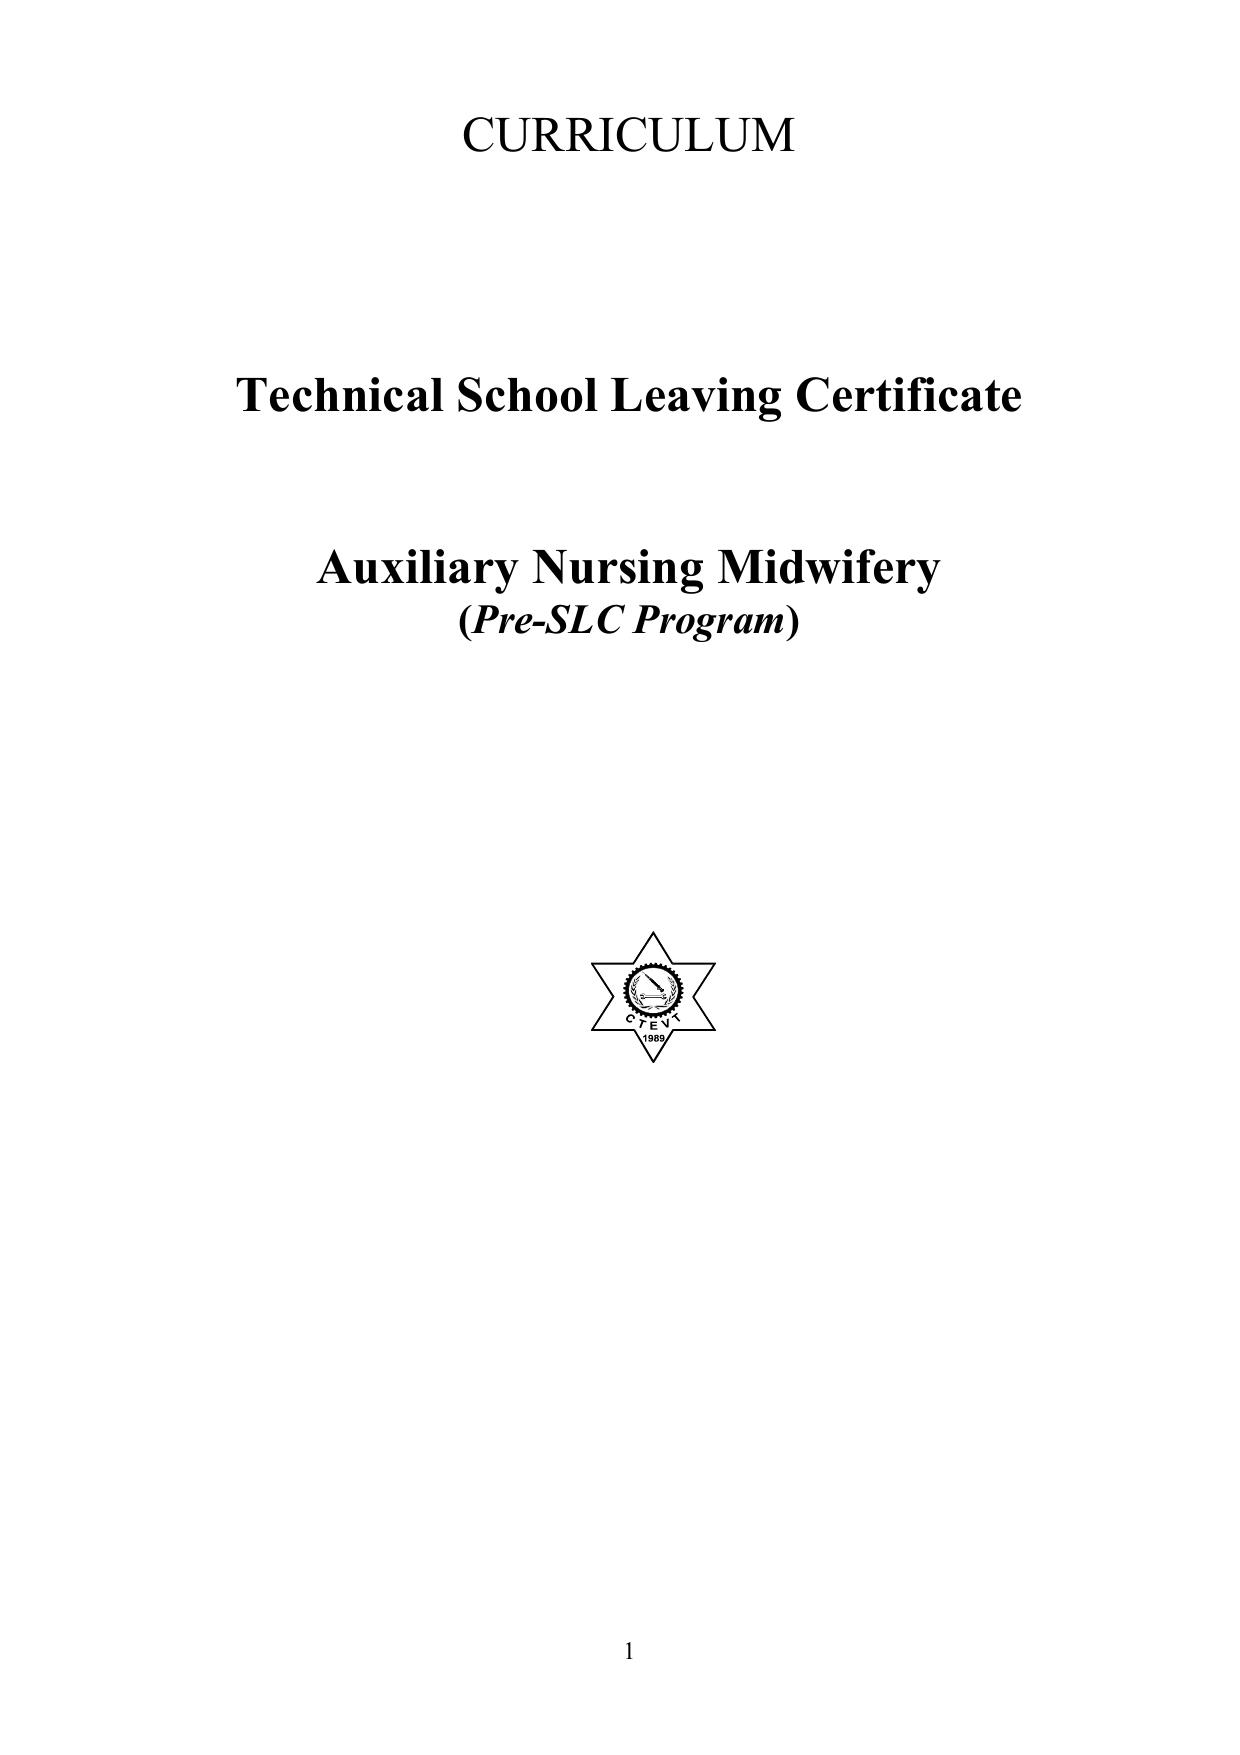 Auxiliary Nursing Midwifery (ANM) Pre SLC, 2014